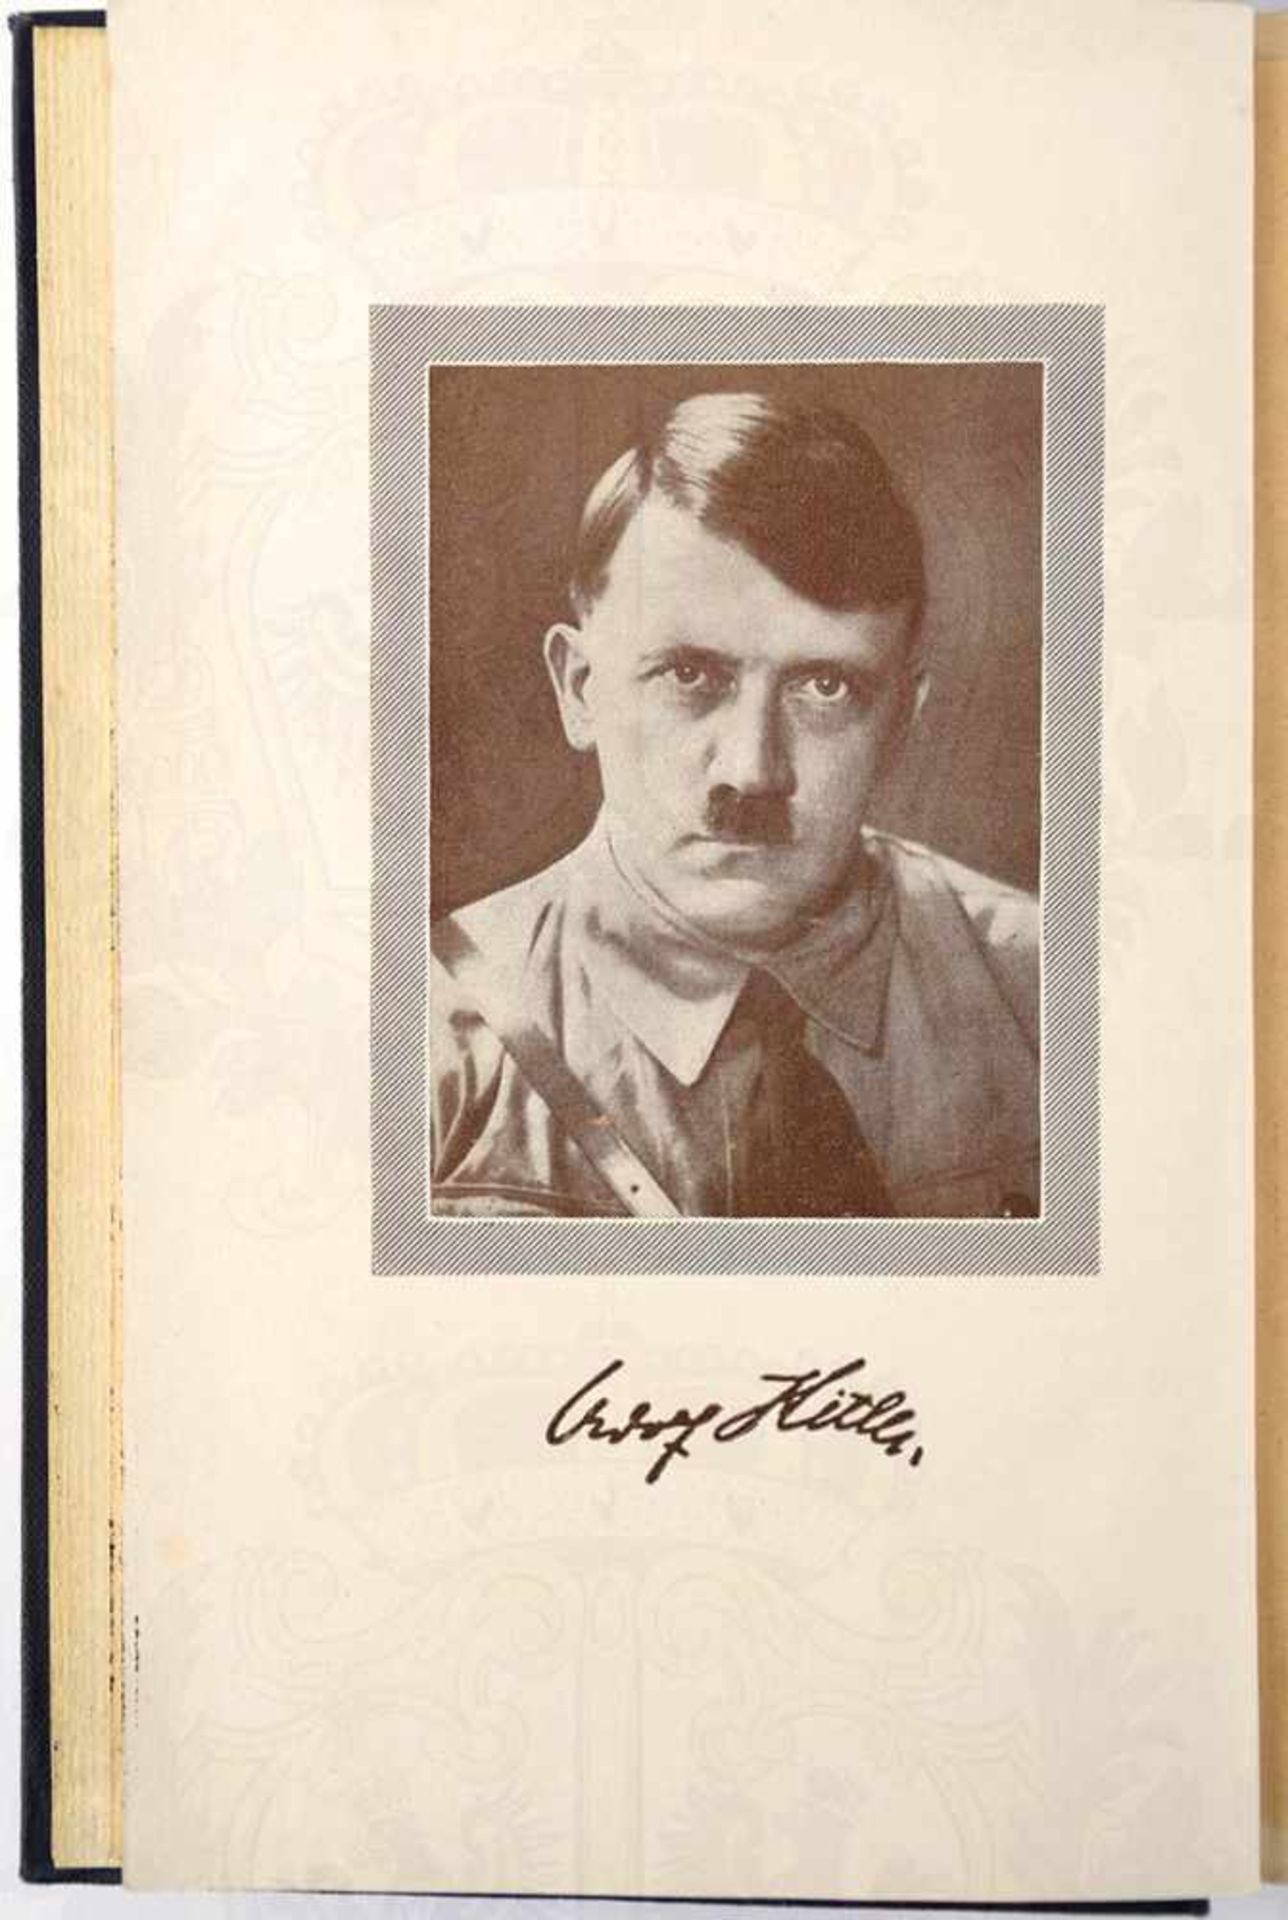 MEIN KAMPF, A. Hitler, Volksausgabe, Eher Verlag, München 1933, 781 S., 1 Porträtbild, goldgepr. - Bild 2 aus 3